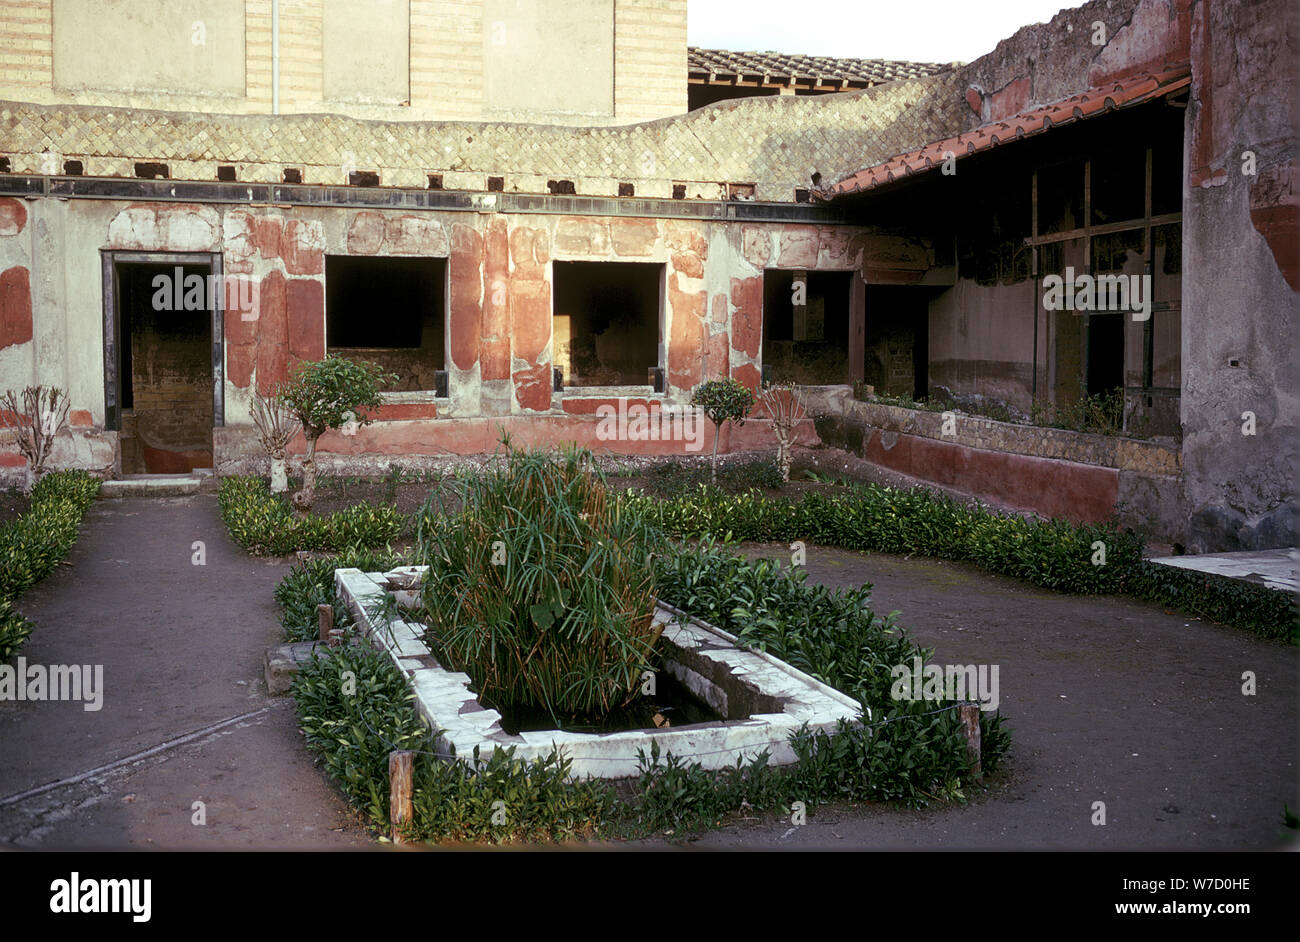 Jardin dans la cour de la Villa romaine, la Maison de l'Cerfs, Herculanum, Italie. Artiste : Inconnu Banque D'Images